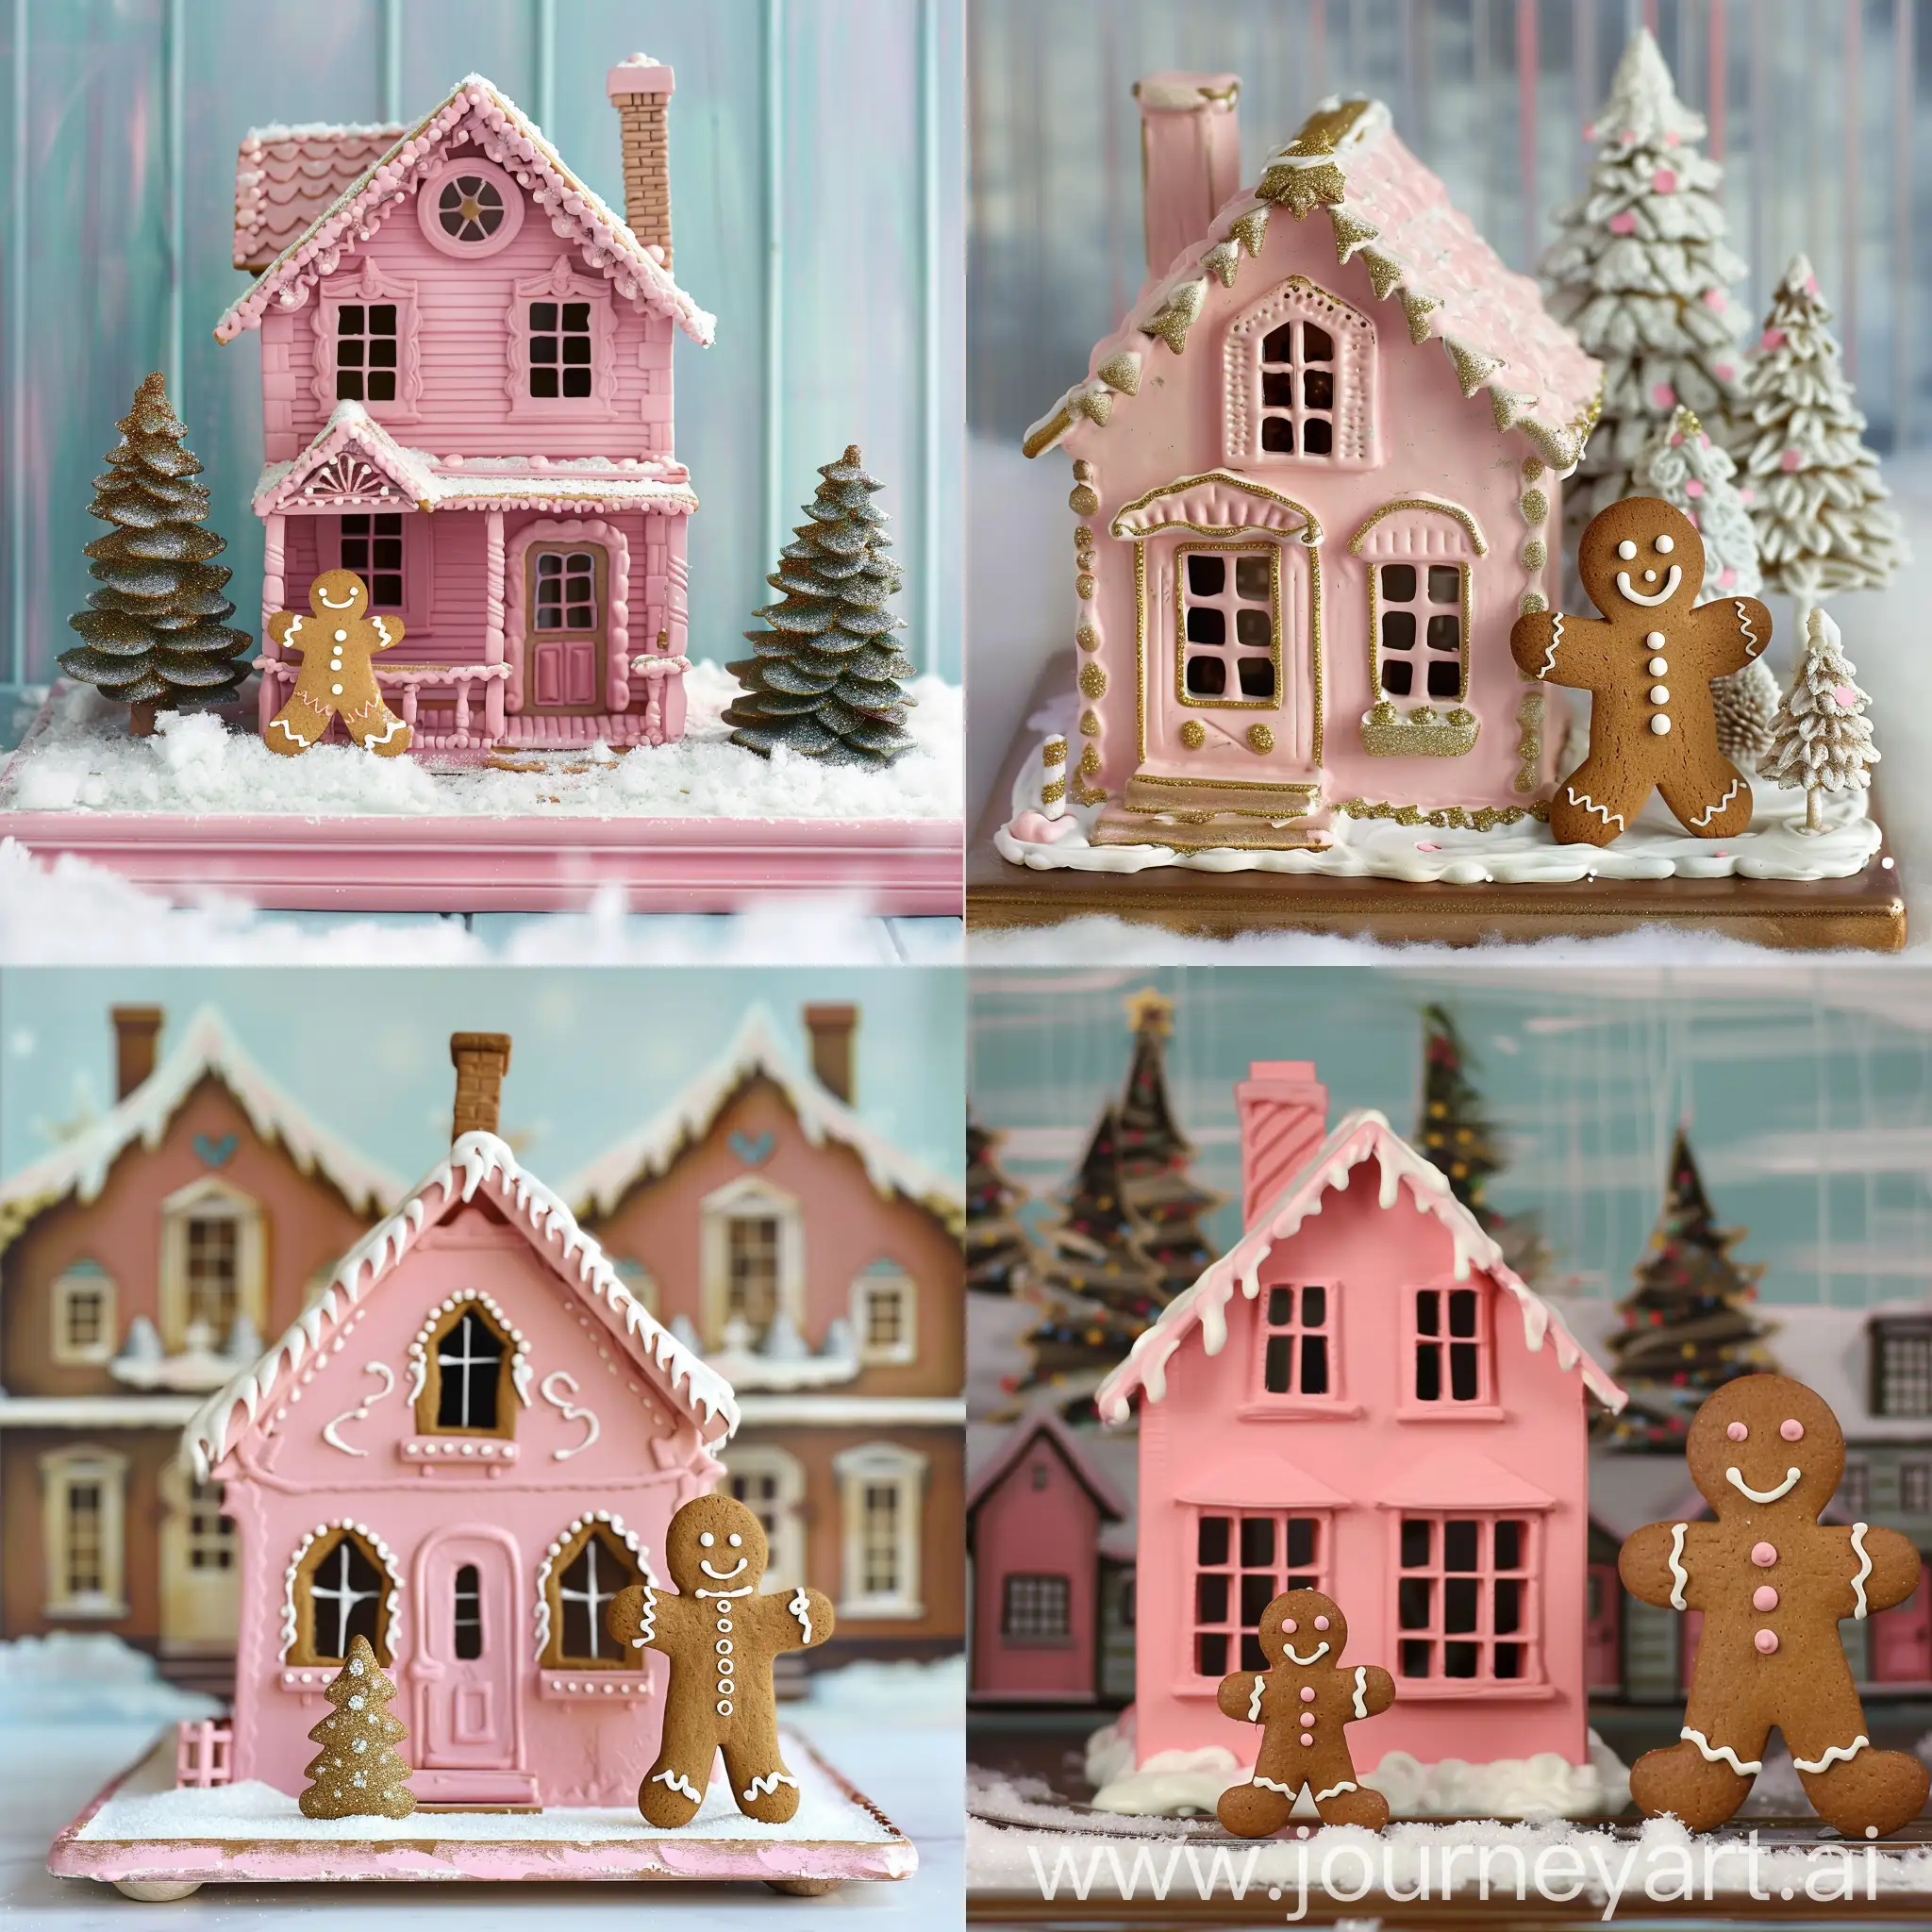 粉色圣诞小房子 房前有个姜饼人